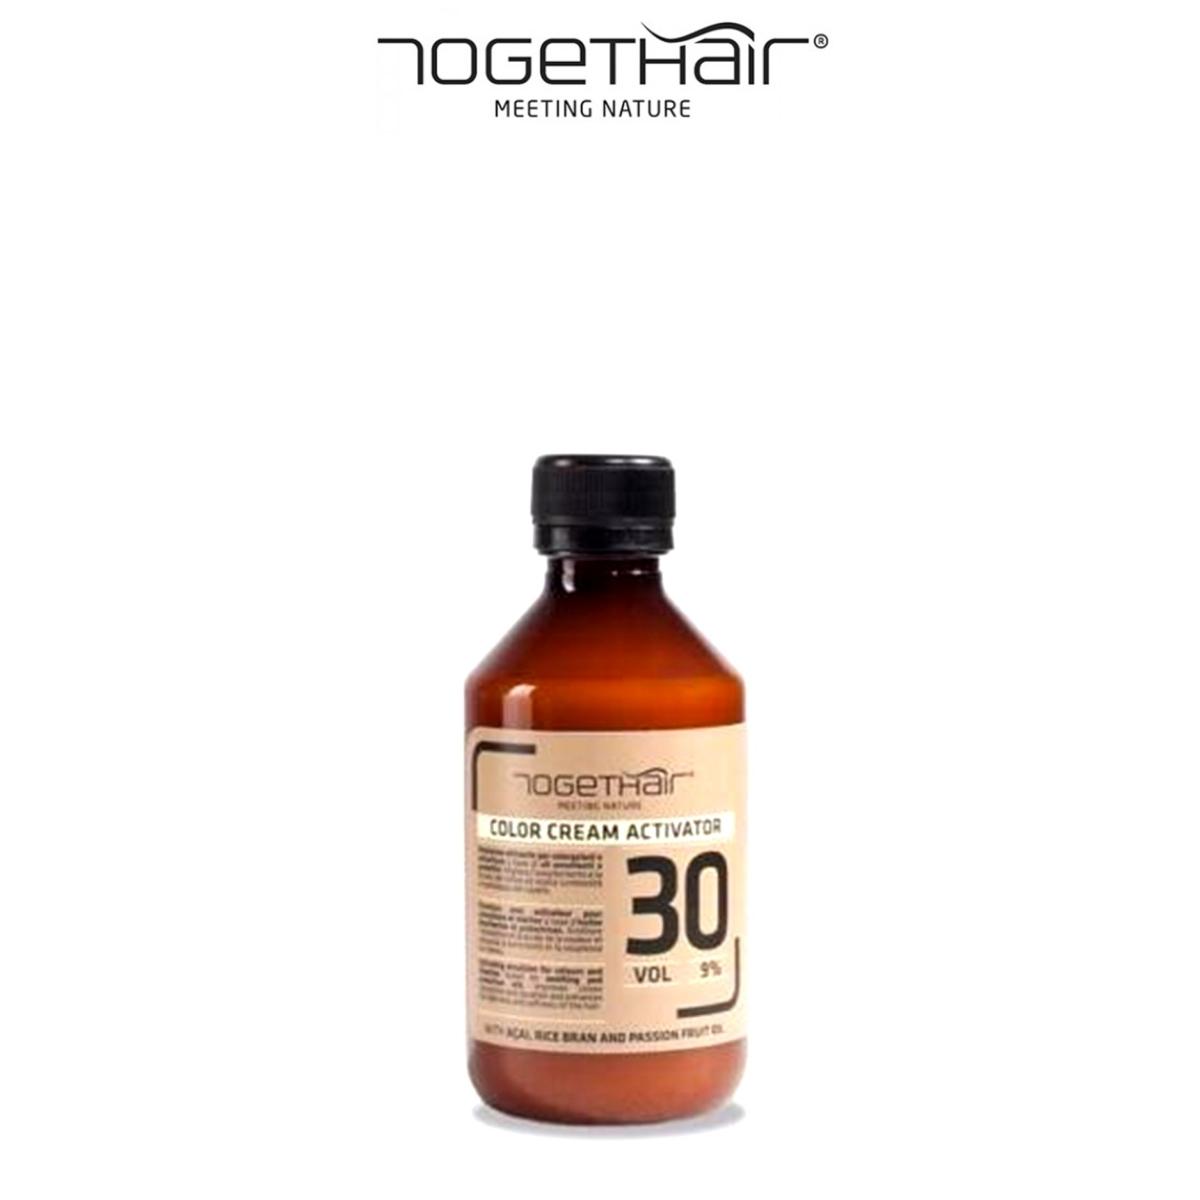 Togethair Ossigeno In Crema 30 Vol 9%  ( Attivatore ) 250 ml